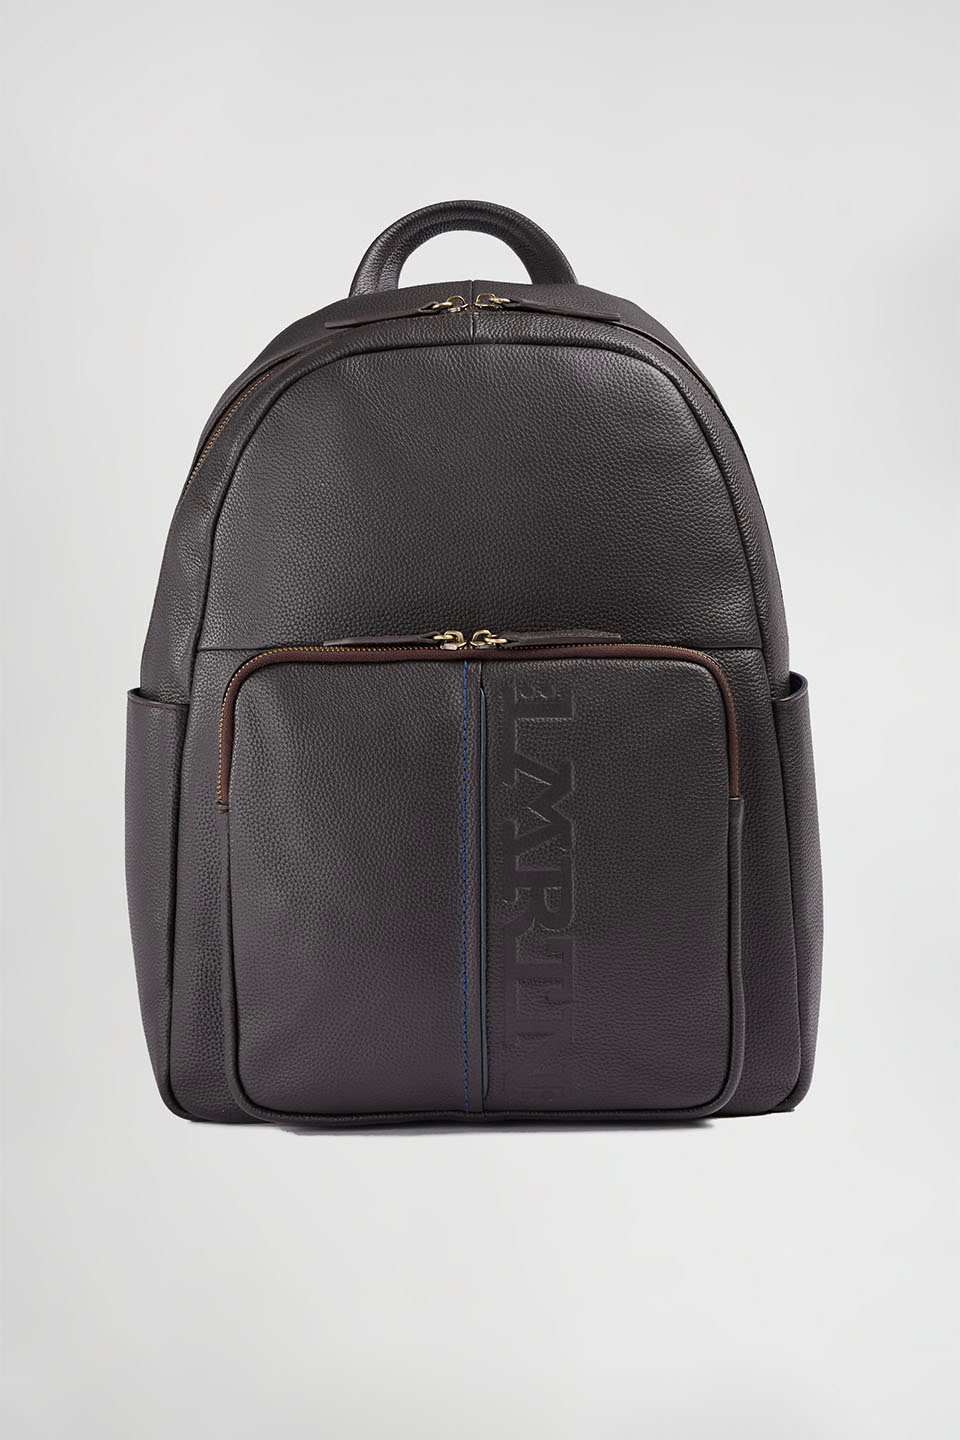 Leather backpack - La Martina - Official Online Shop